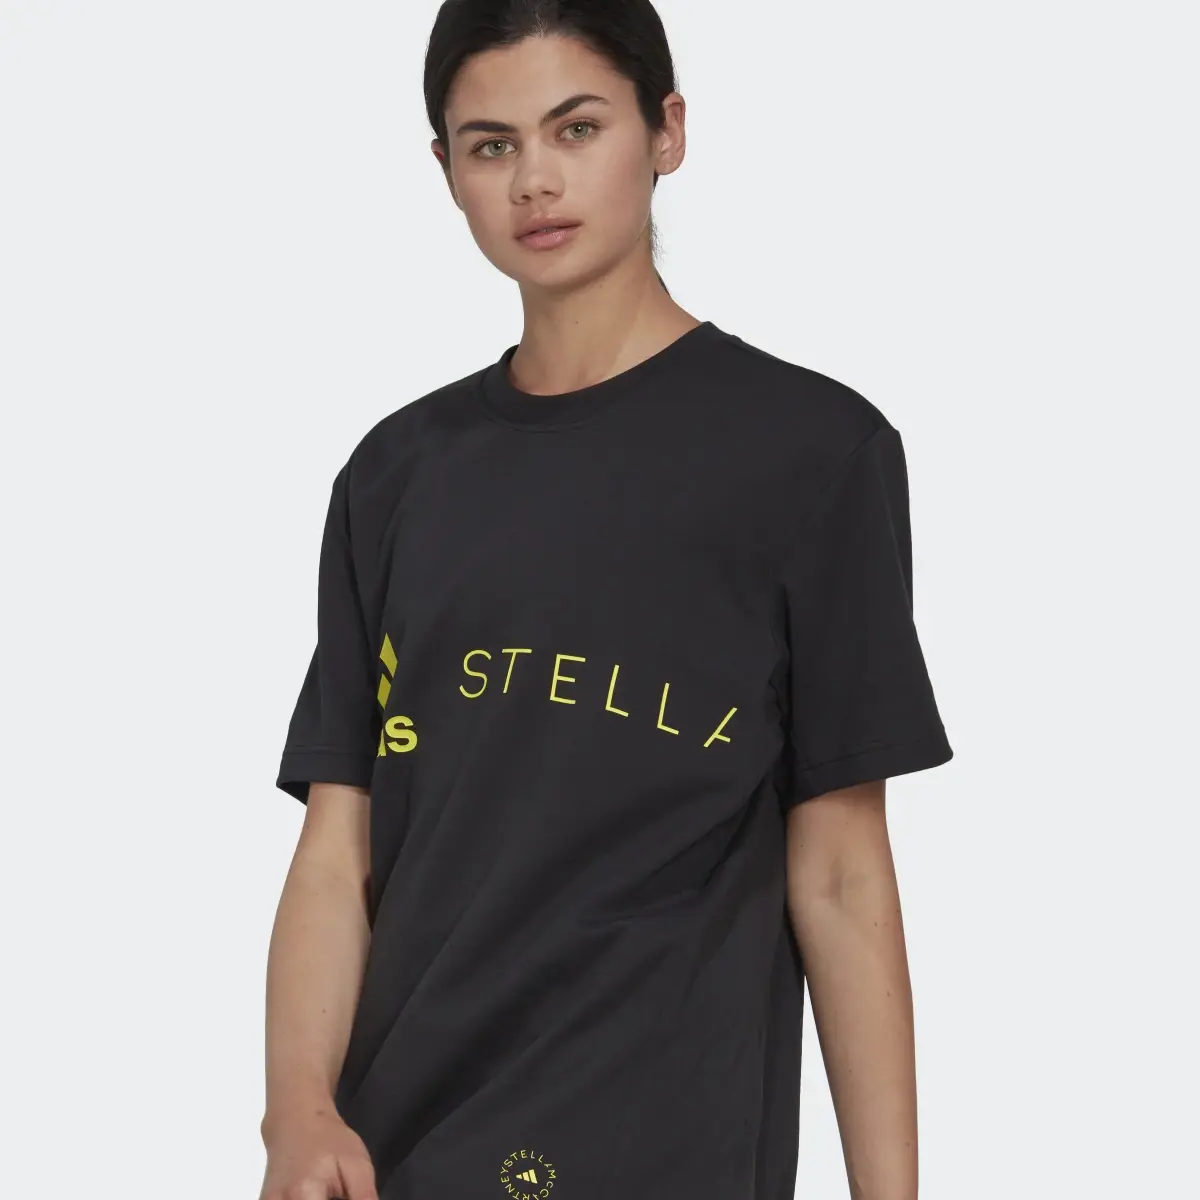 Adidas T-shirt Logo adidas by Stella McCartney.. 1